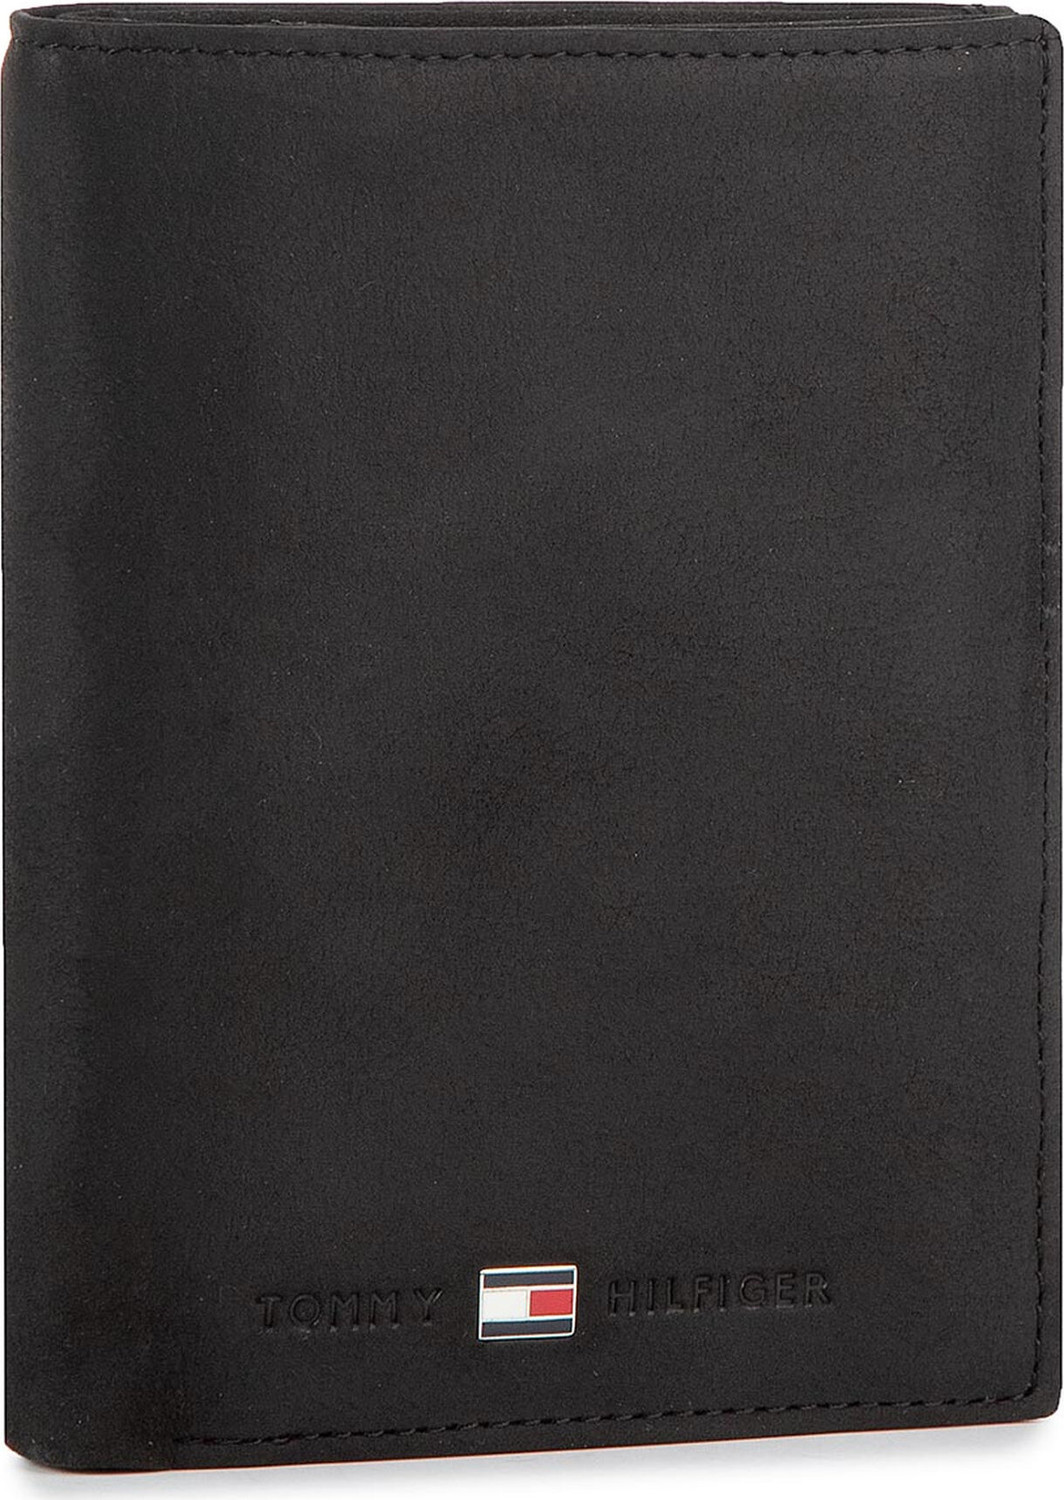 Velká pánská peněženka Tommy Hilfiger Johanson N/S Wallet W/Coin Pocket AM0AM00664 002